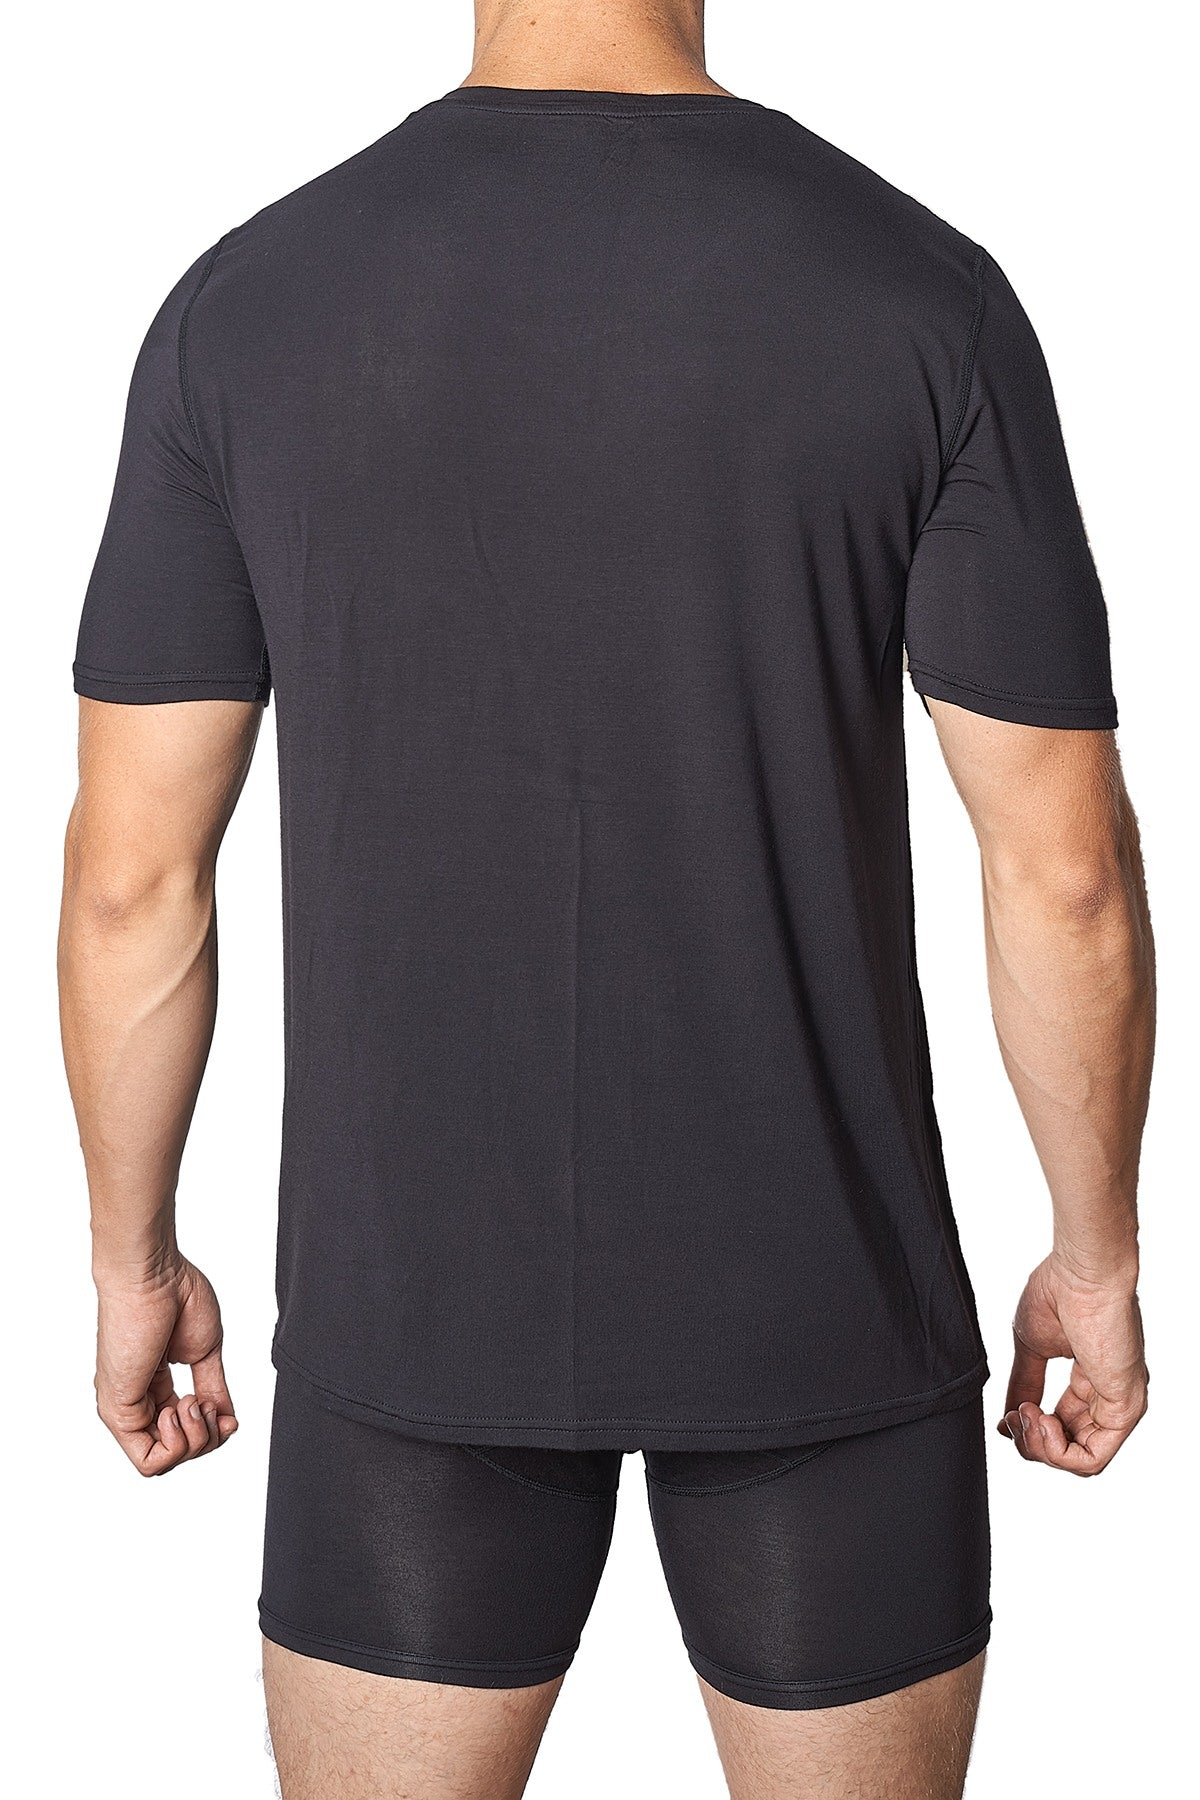 Yocisco's Black Essentials V-Neck Shirt